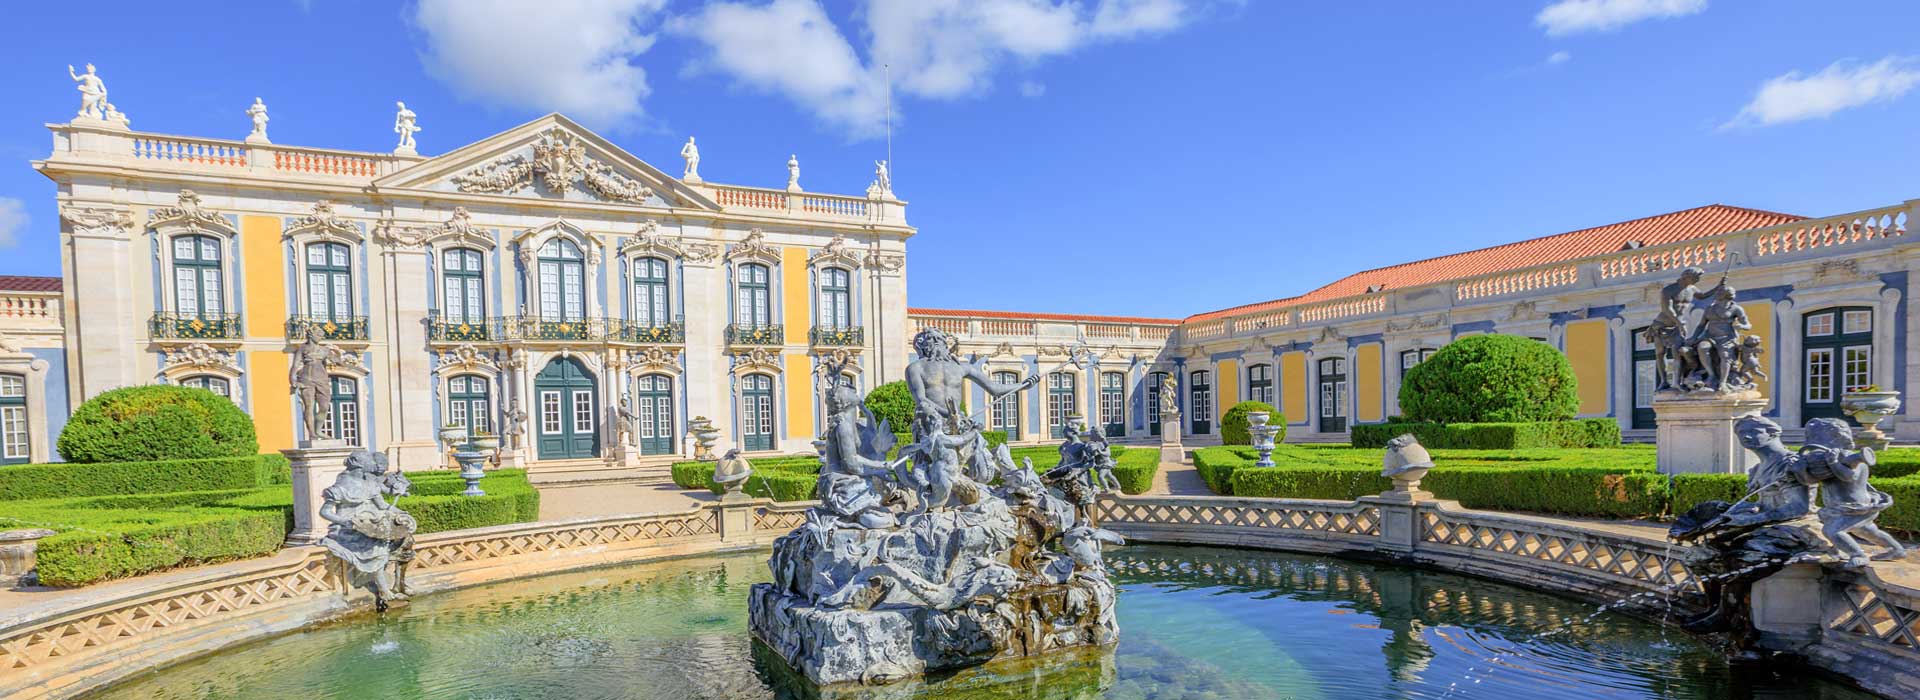 National Palace of Queluz (Palácio de Queluz)